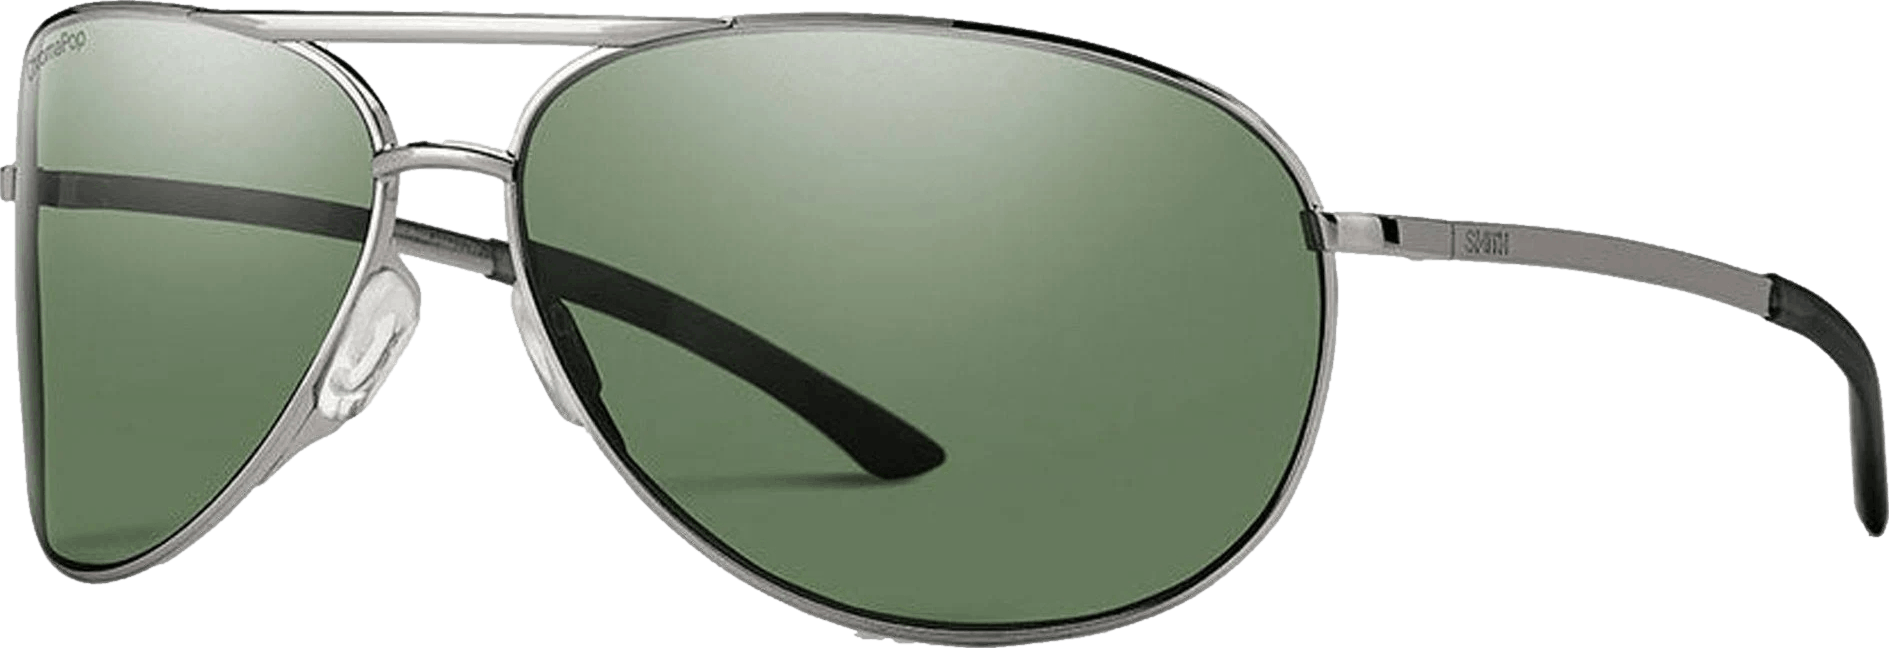 Smith Serpico 2 Chromapop Polarized Sunglasses, Gunmetal